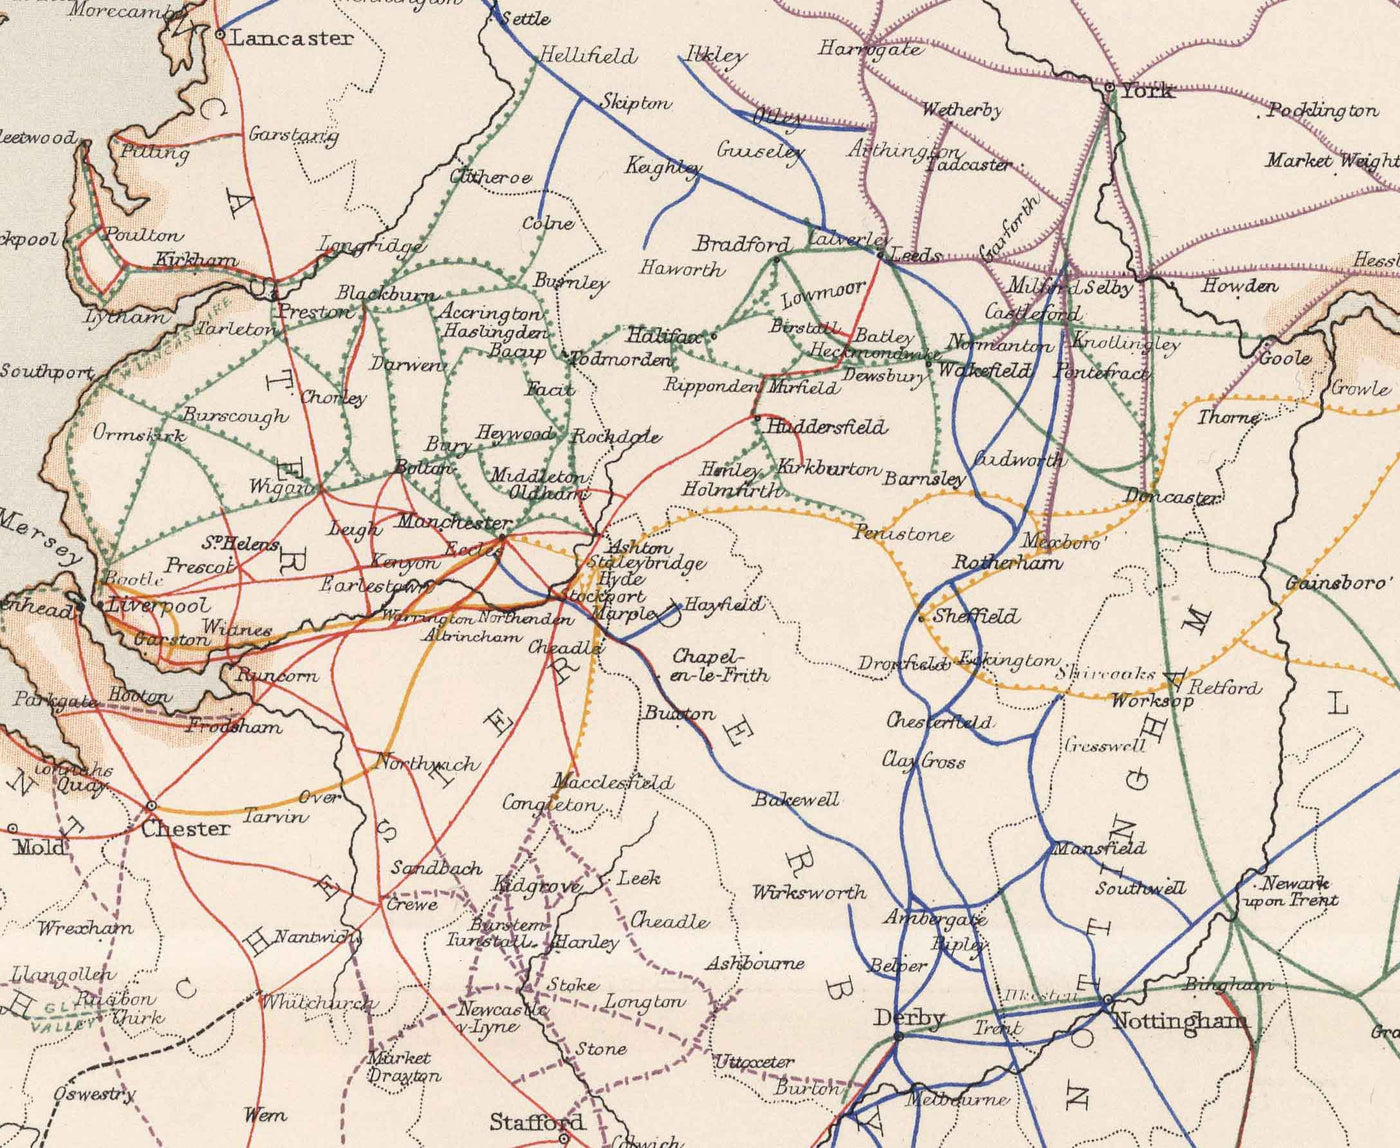 Antiguo mapa ferroviario de Inglaterra y Gales en 1881 por AK Johnston - Great Western, Eastern, Northern, Midland, London & North Western